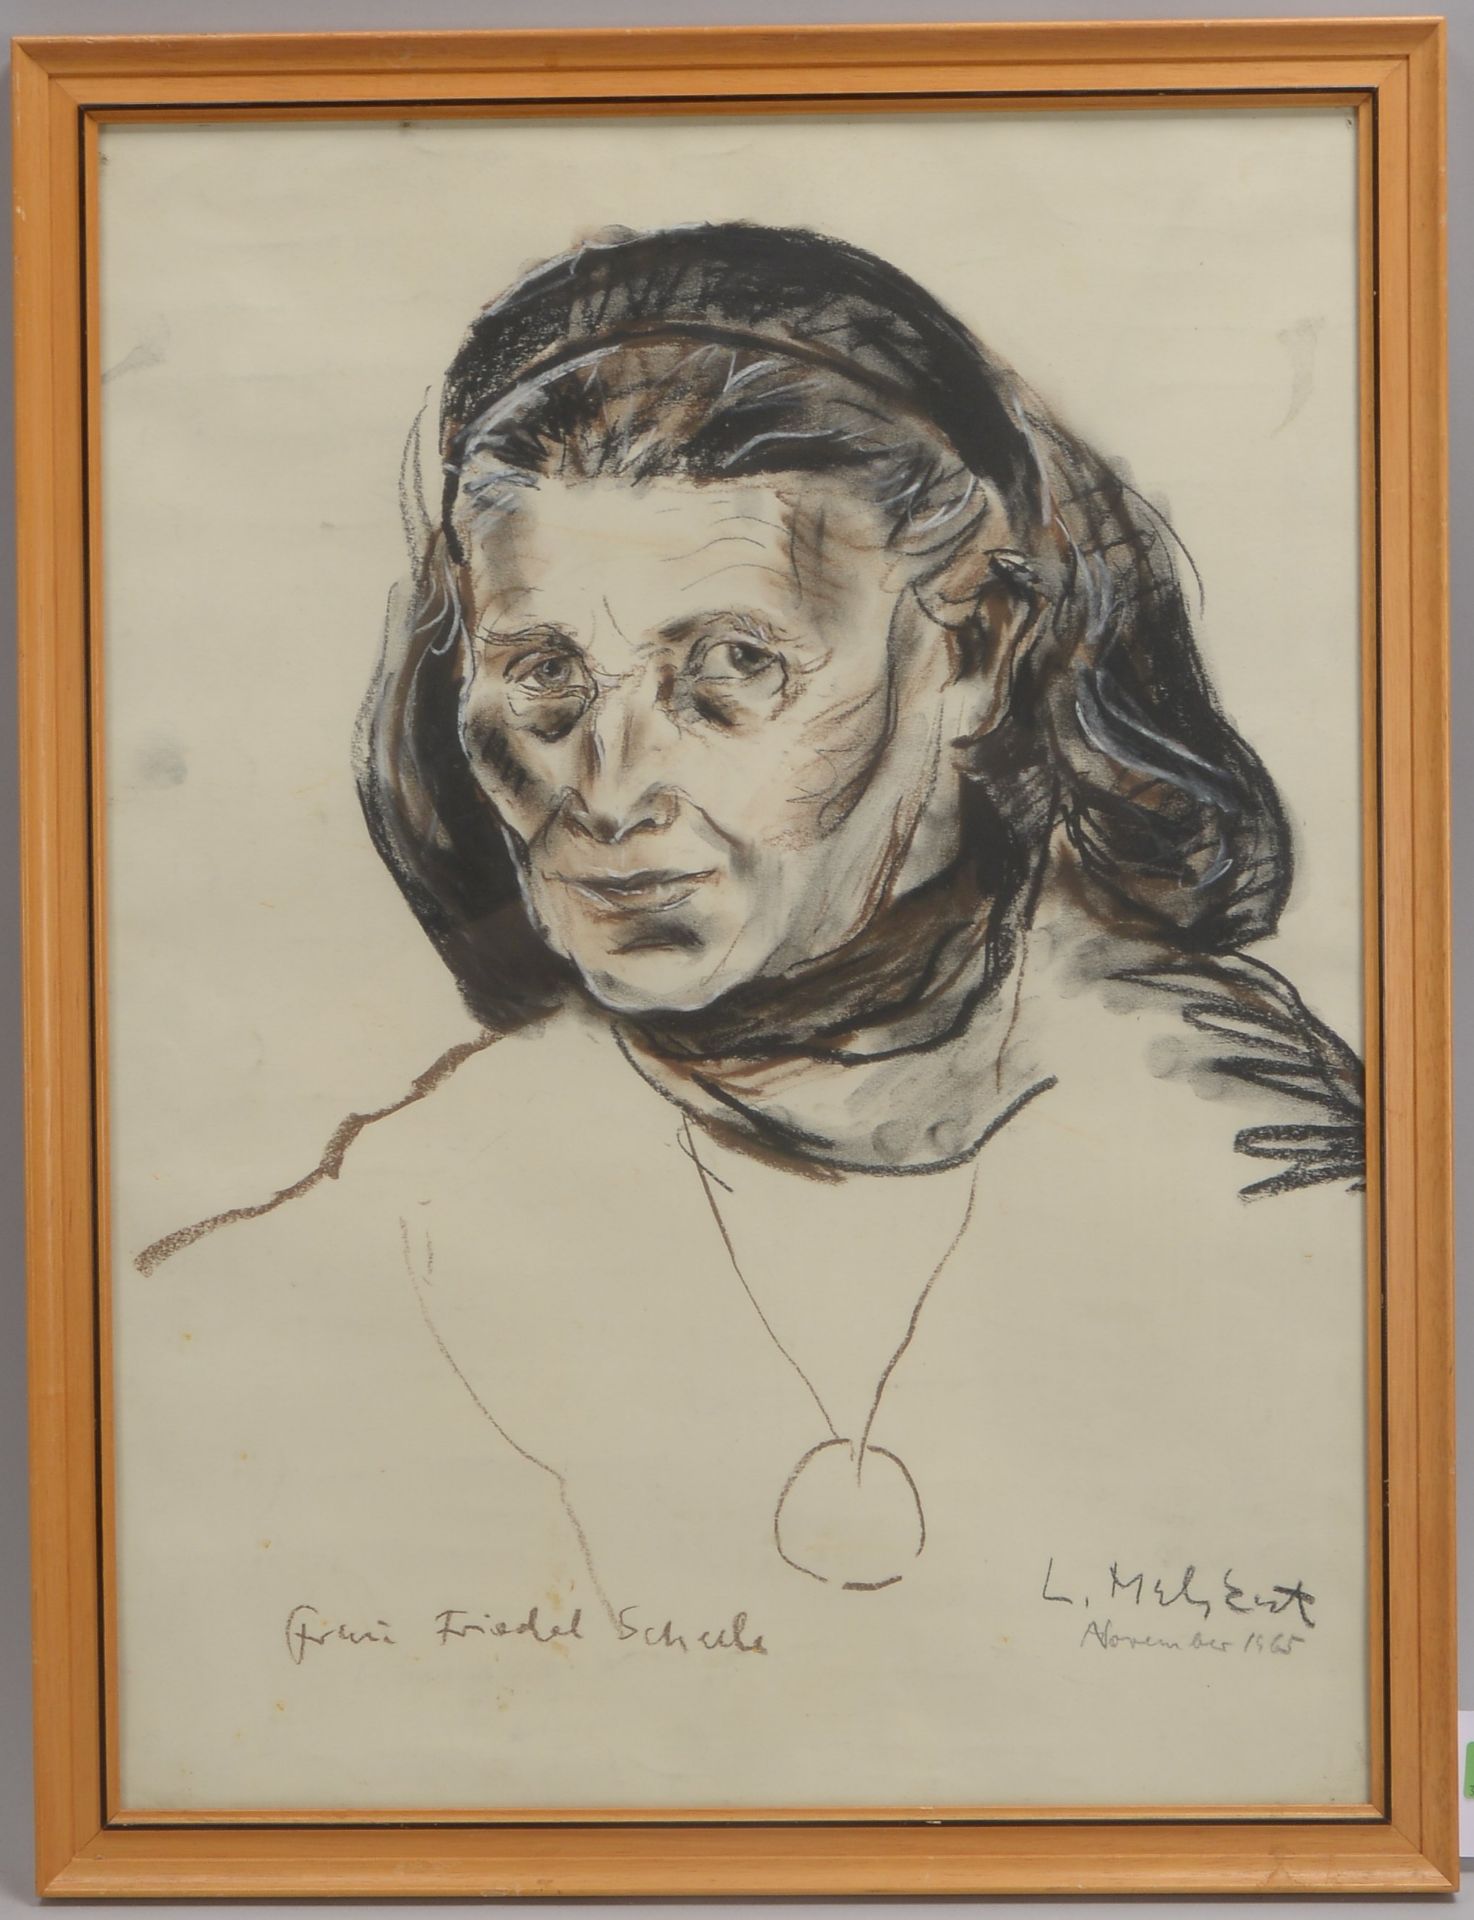 Malskat, Lothar (1913 - 1988), 'Portrait von Frau Friedel Scheele', Kreide- und Kohlezeichnung, sign